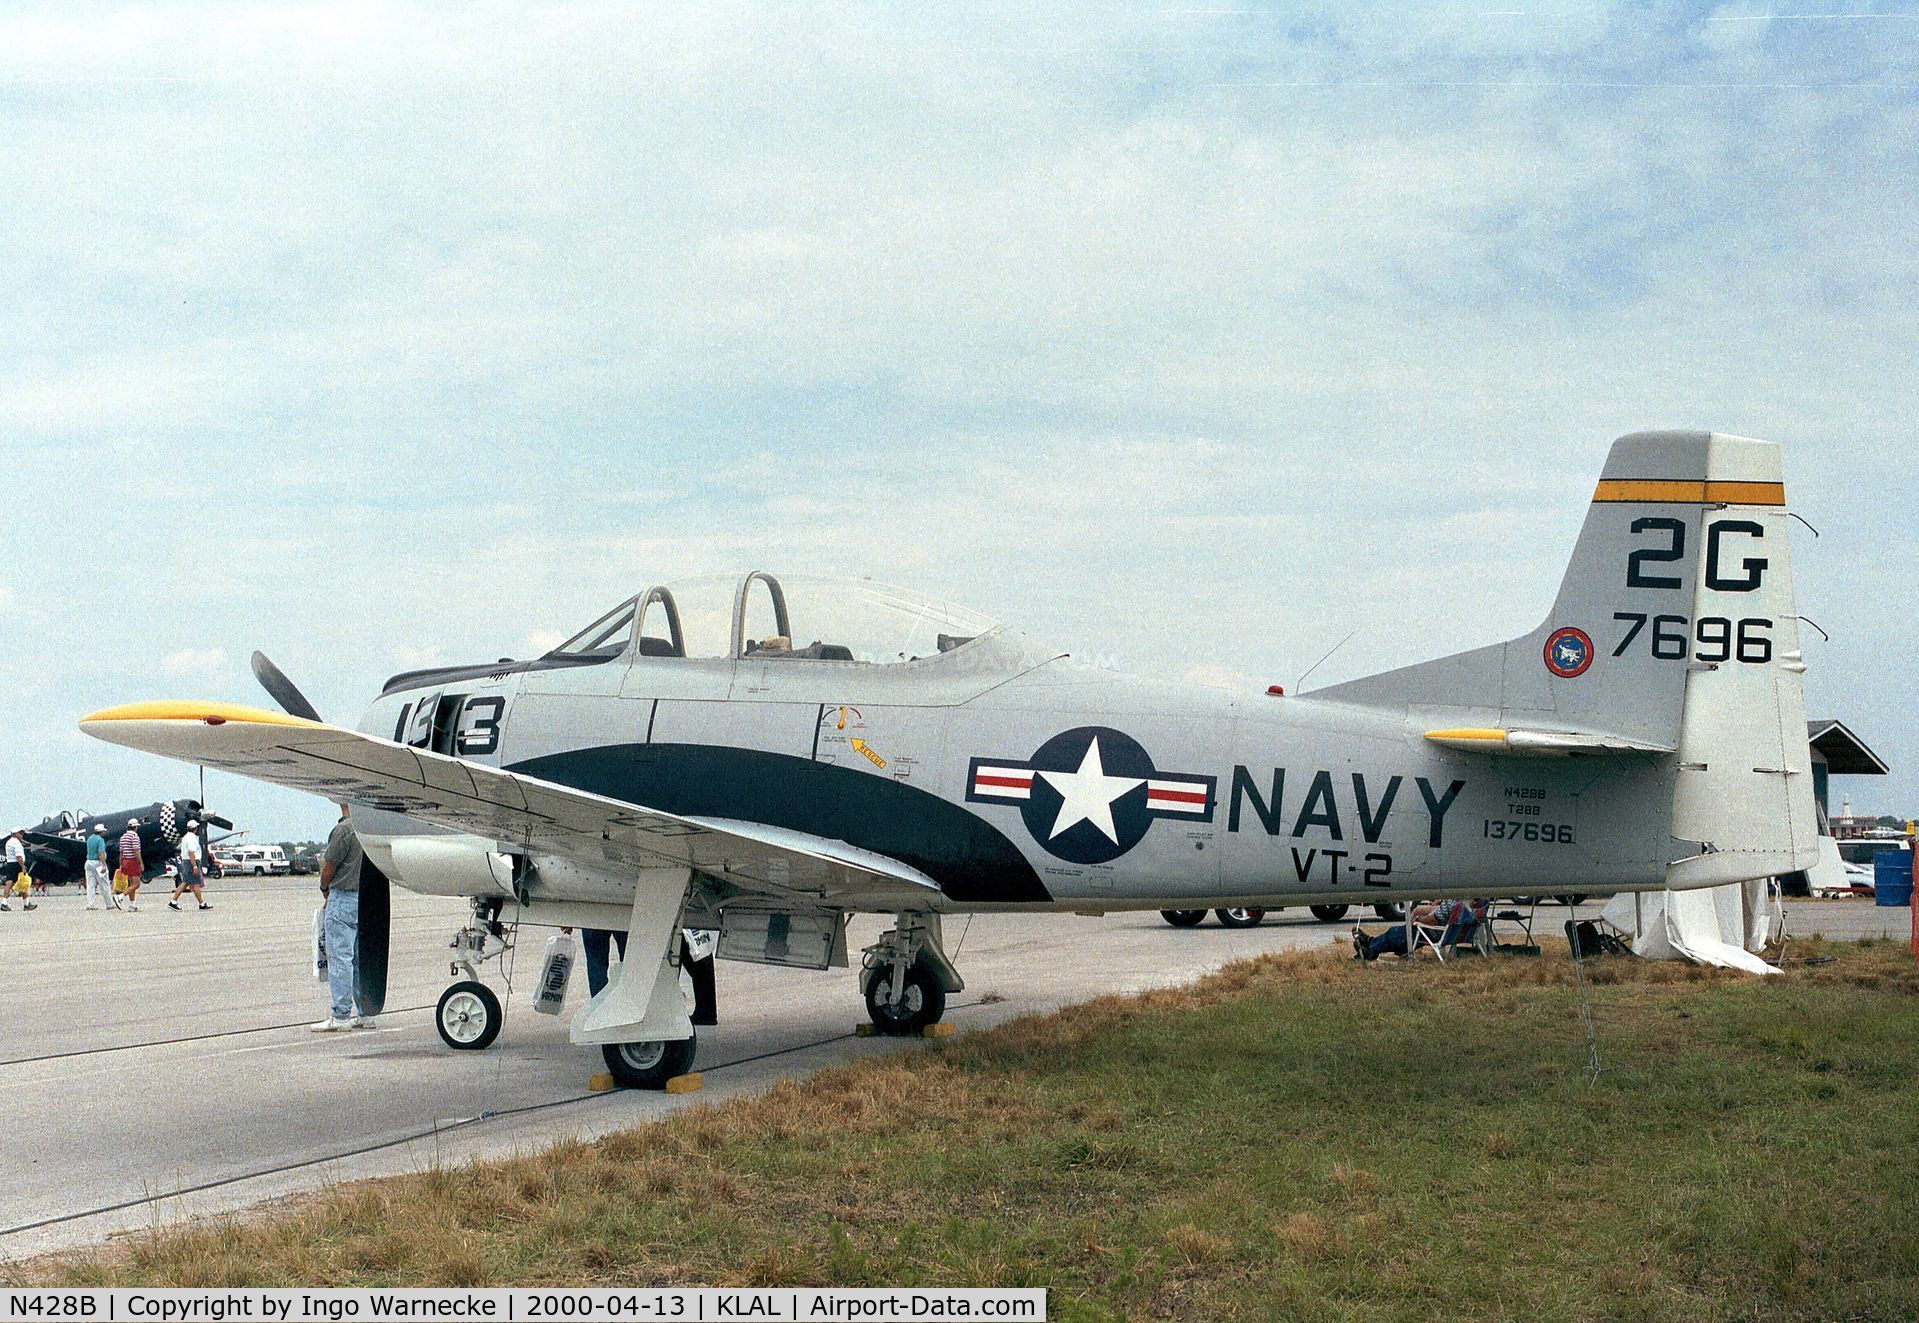 N428B, 1993 North American T-28B Trojan C/N 200-59 (137696), North American T-28B Trojan at 2000 Sun 'n Fun, Lakeland FL